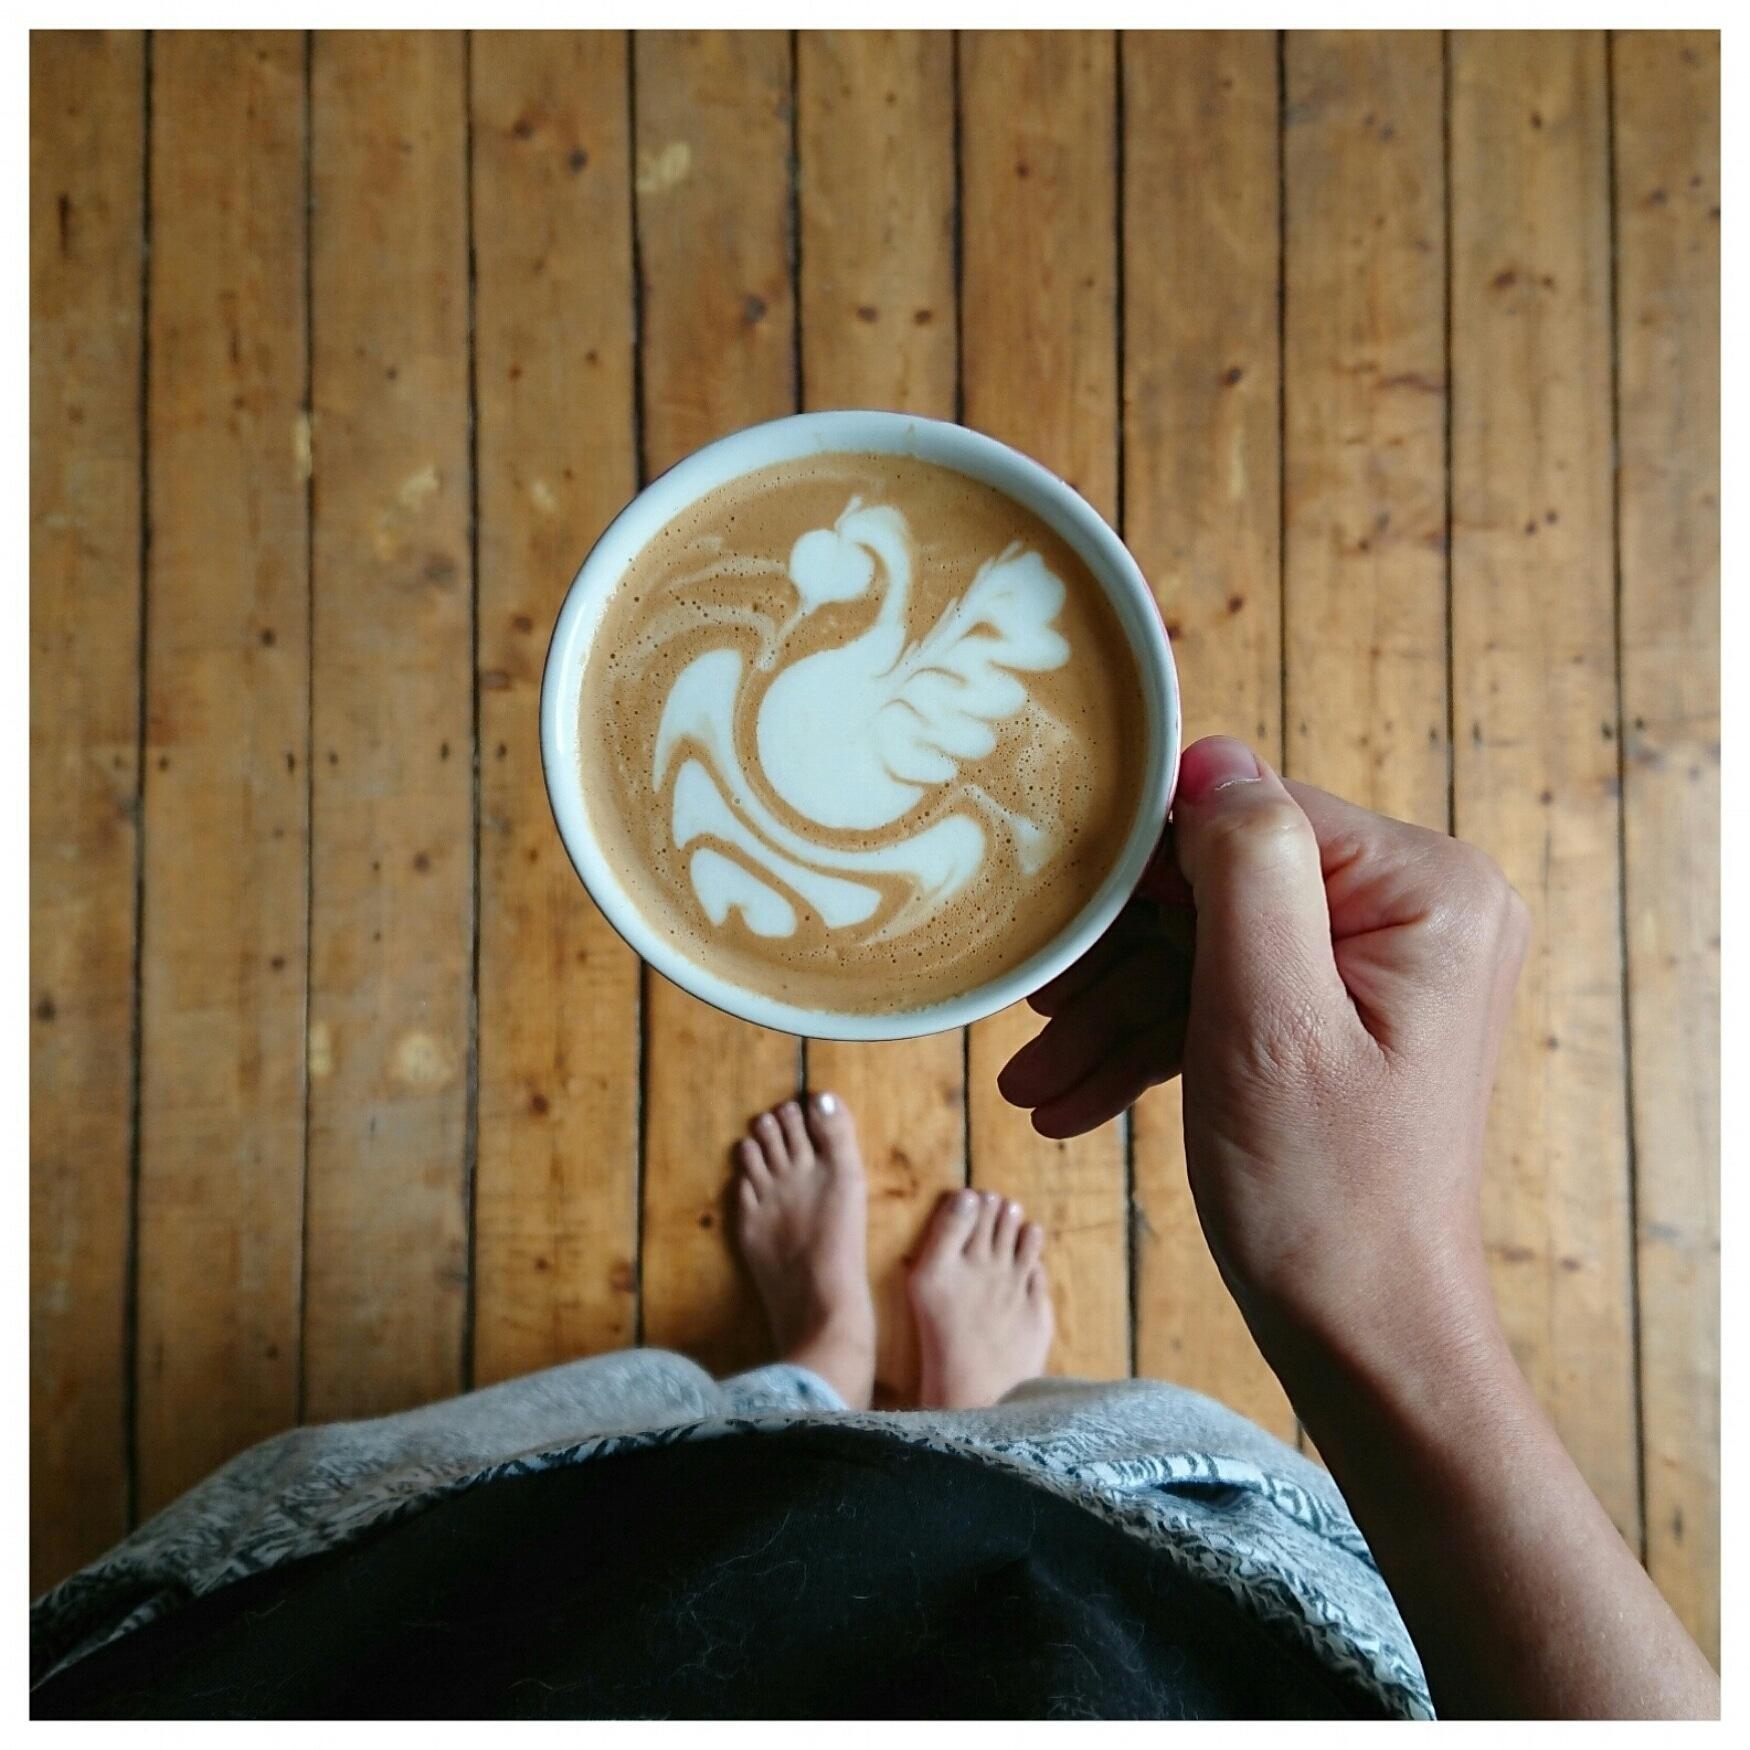 Hi ich bin Anna. 
Und ich mache Kaffee. 
#annamachtkaffee 
#beifreundinnen 
#butfirstcoffee 
#neuhier
